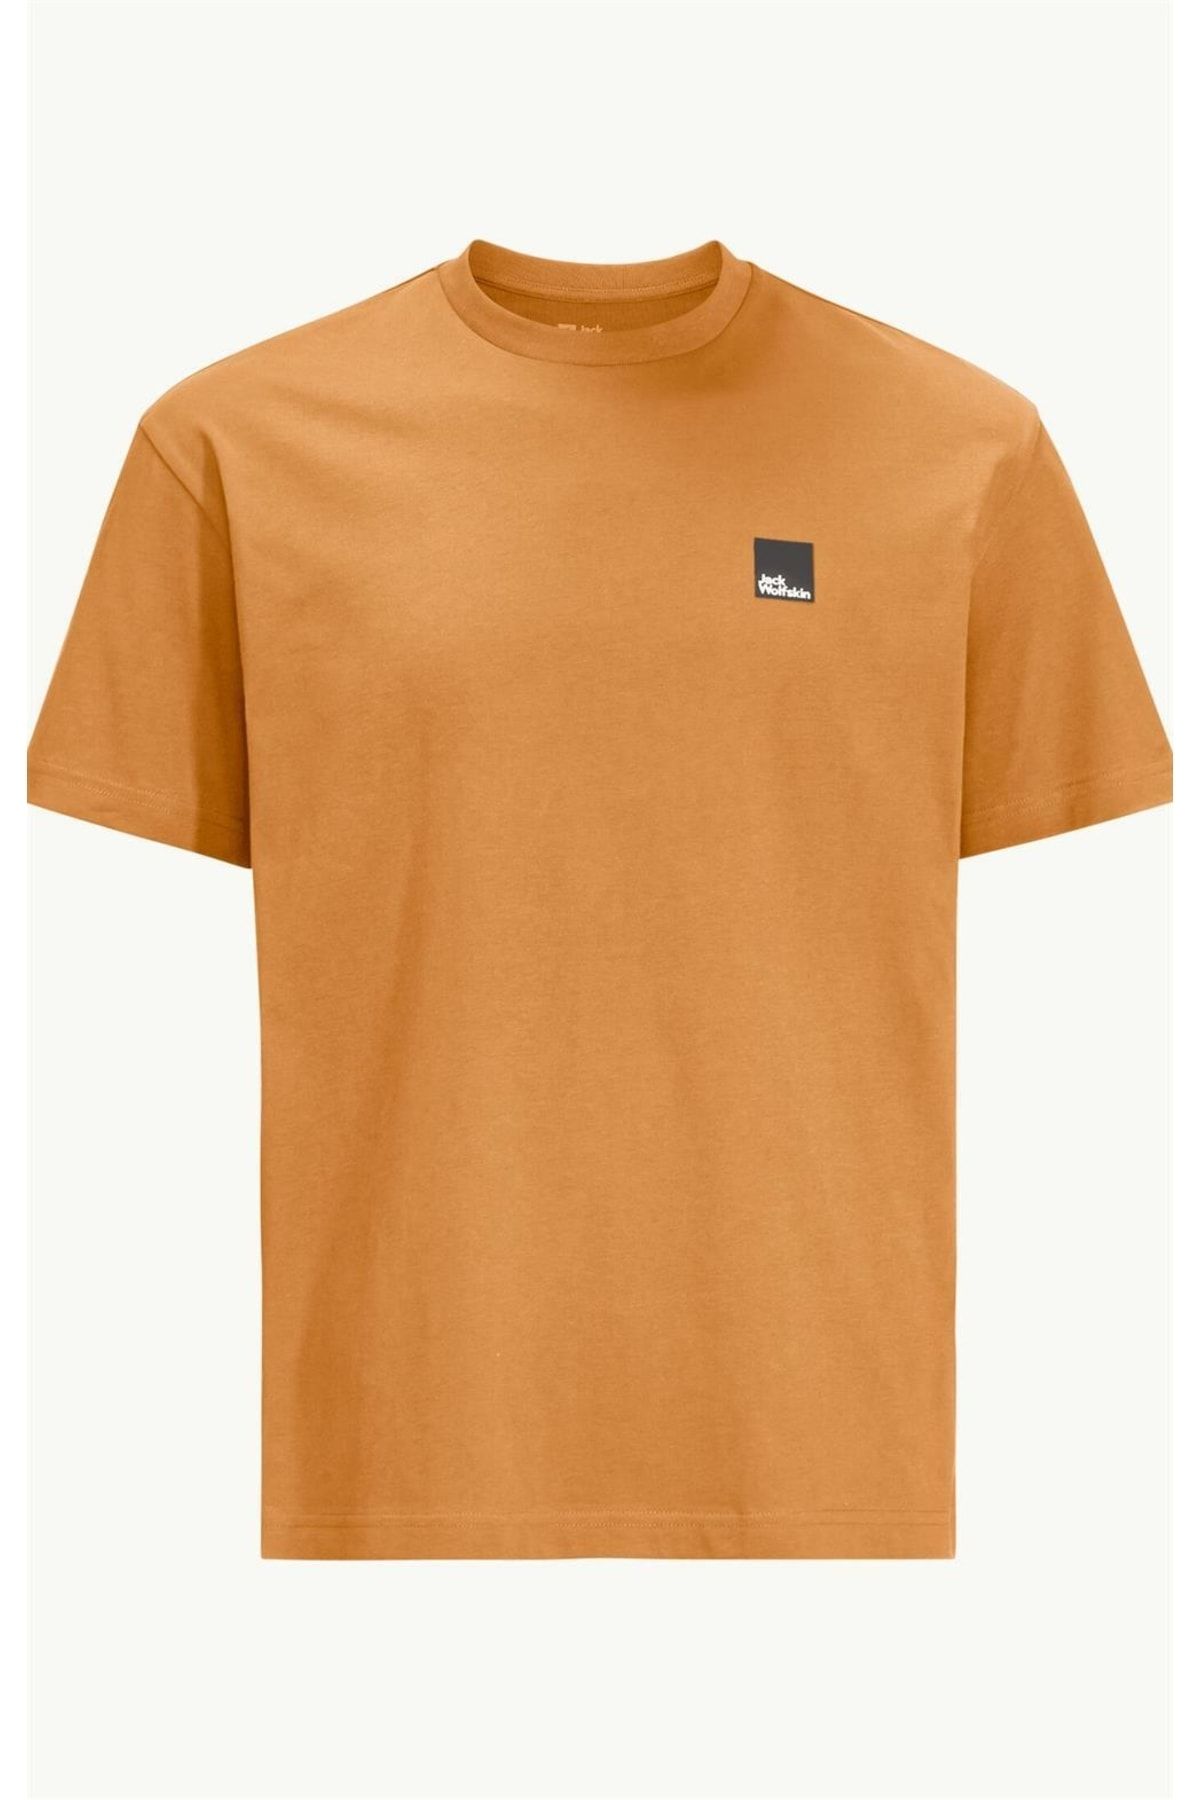 Jack Wolfskin T-shirt Fiyatı, - Yorumları Eschenheimer Trendyol Unisex